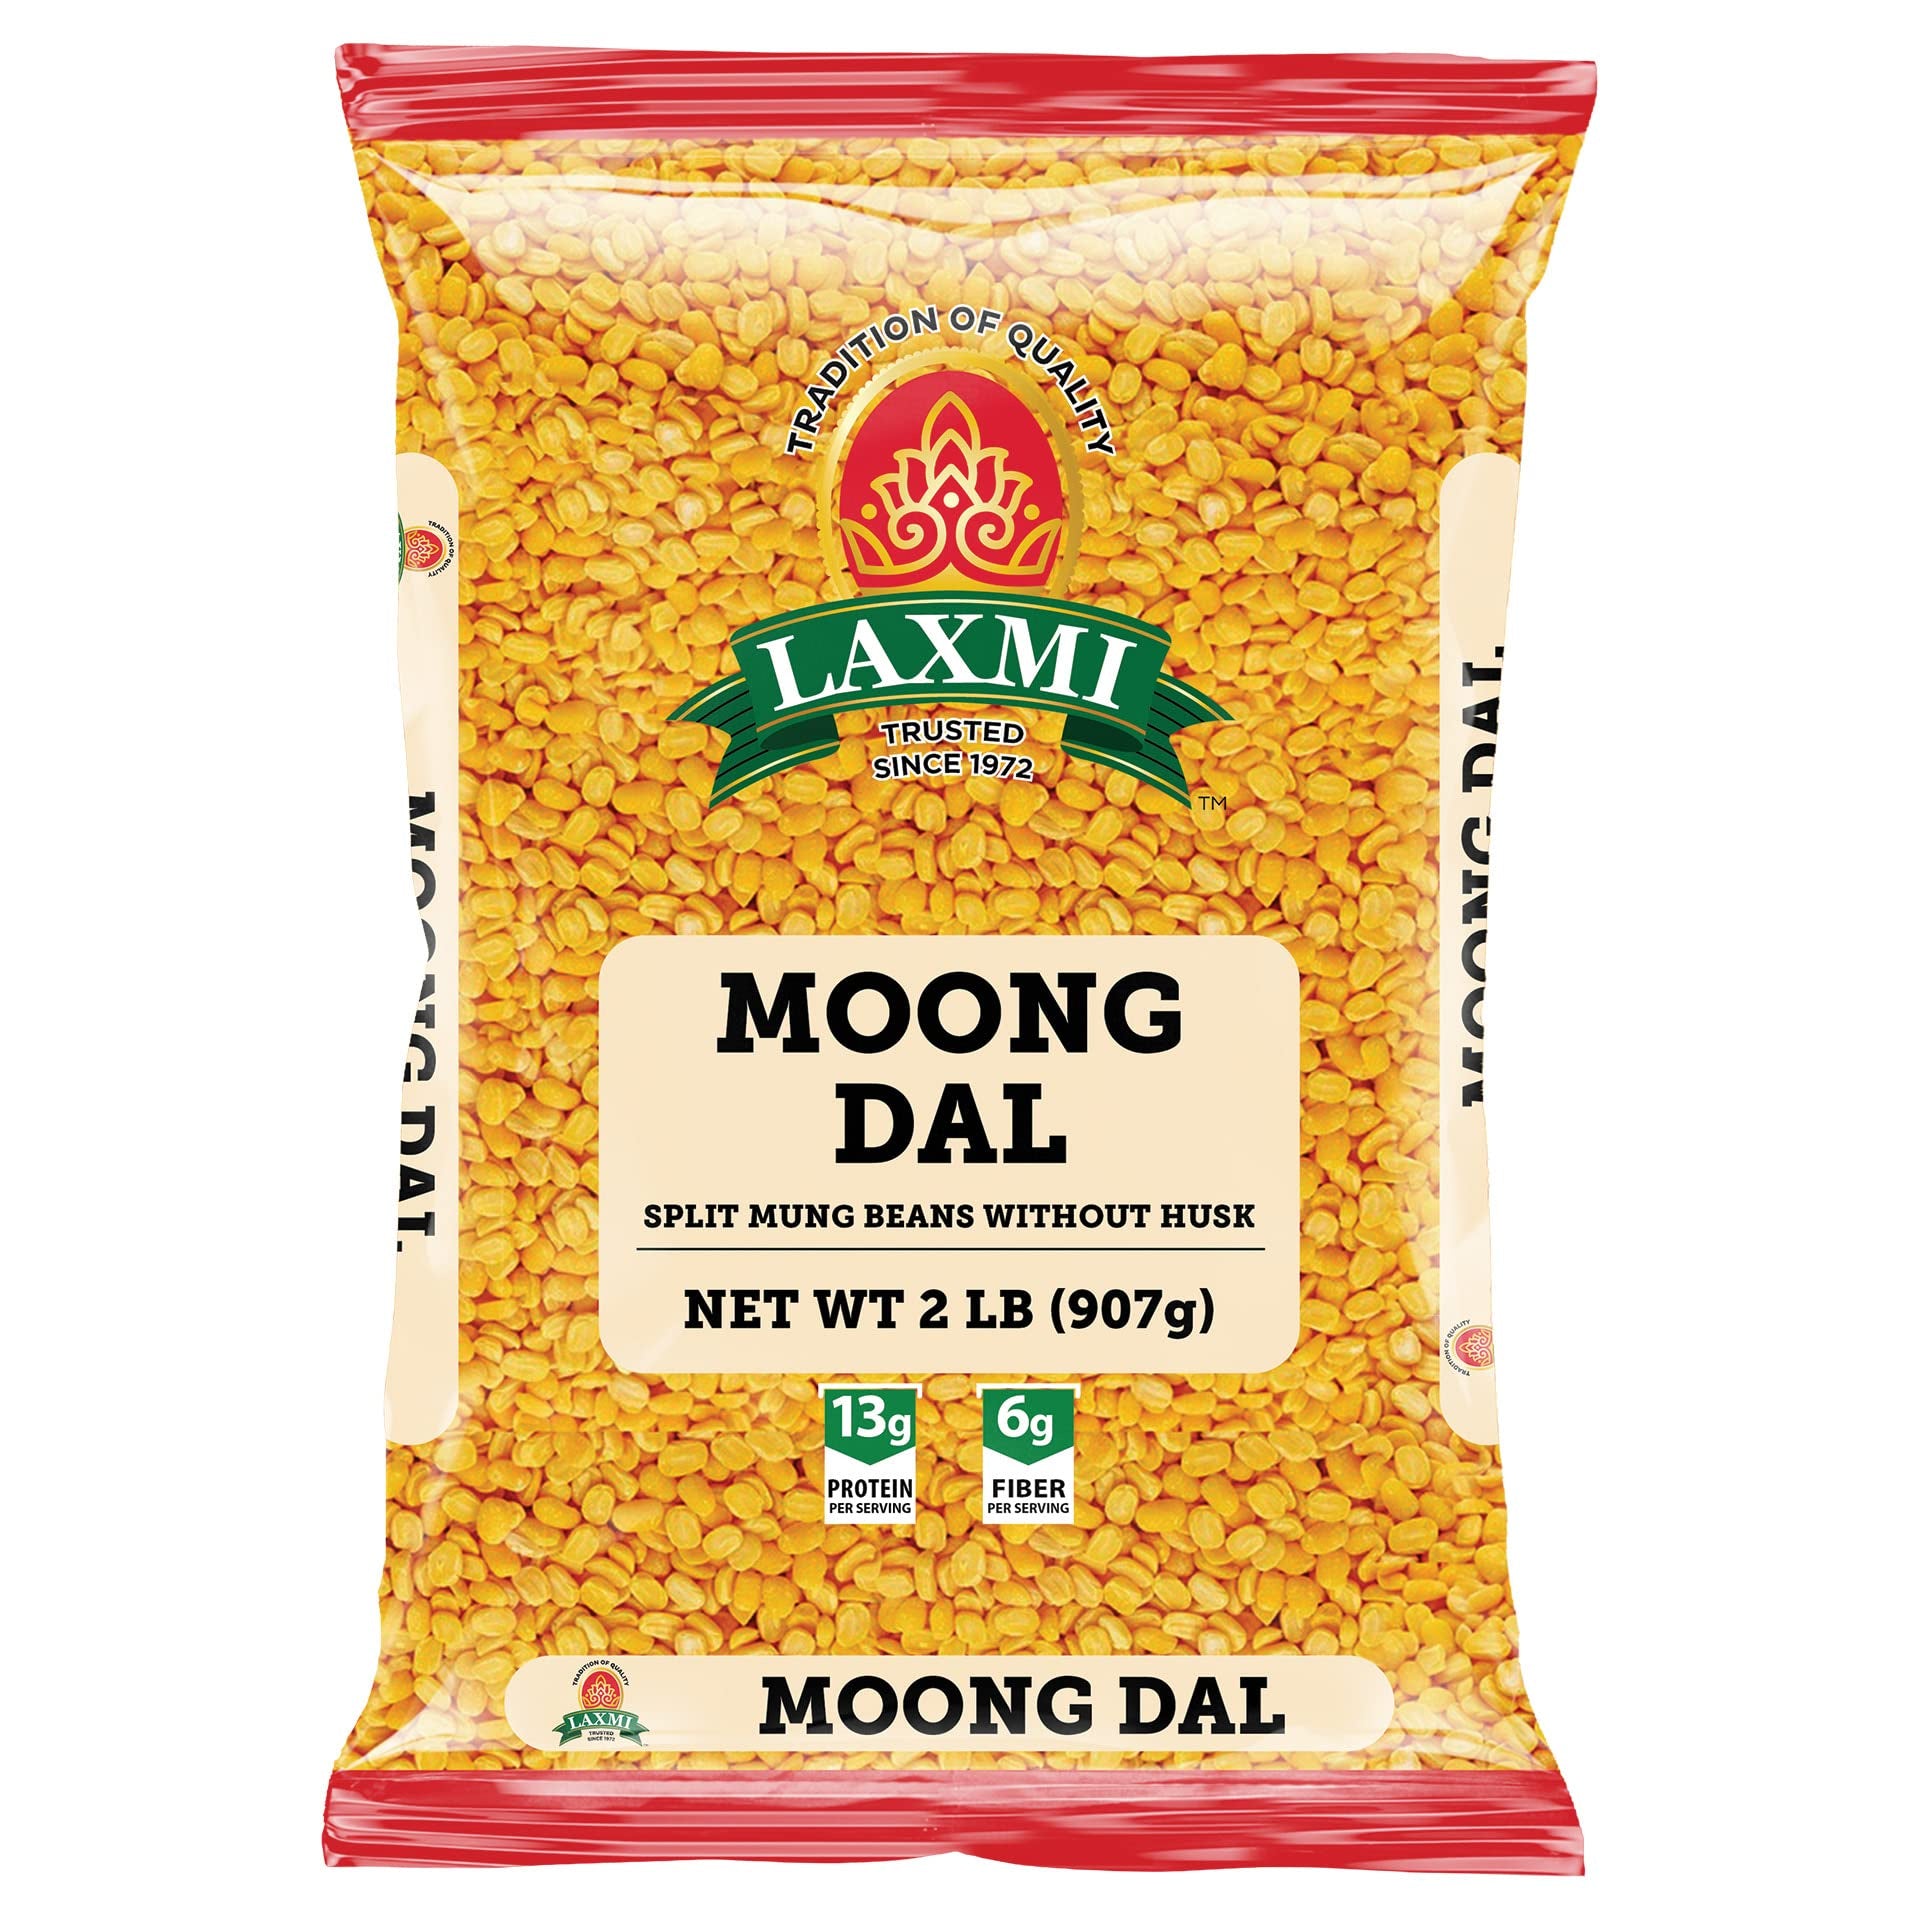 Laxmi - Moong Daal 2lb